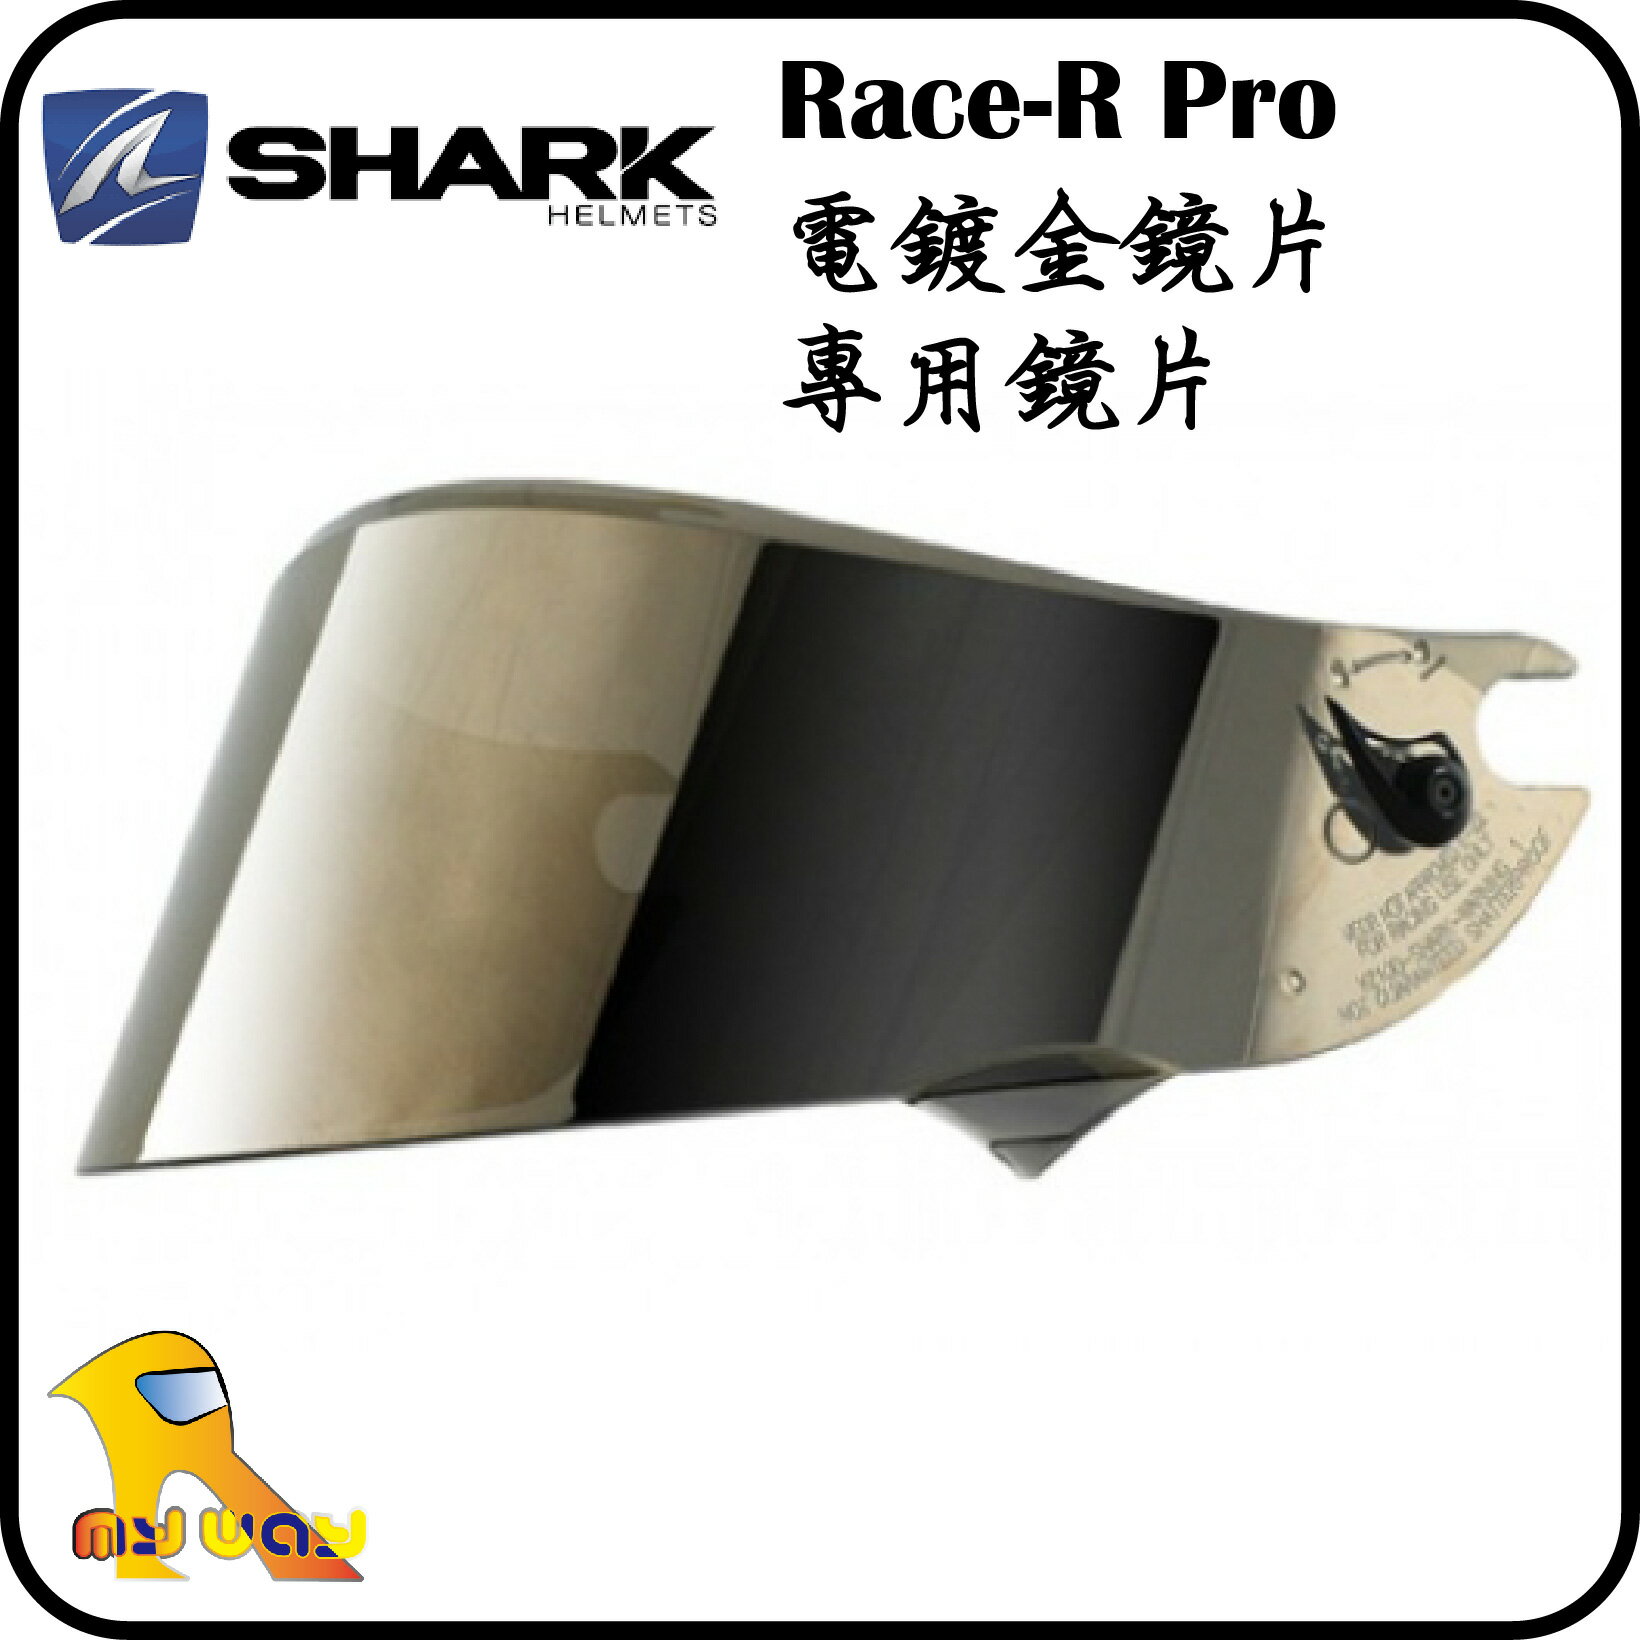 ~任我行騎士部品~ Shark Race-R pro 電鍍金 VZ10030P 原廠 專用鏡片